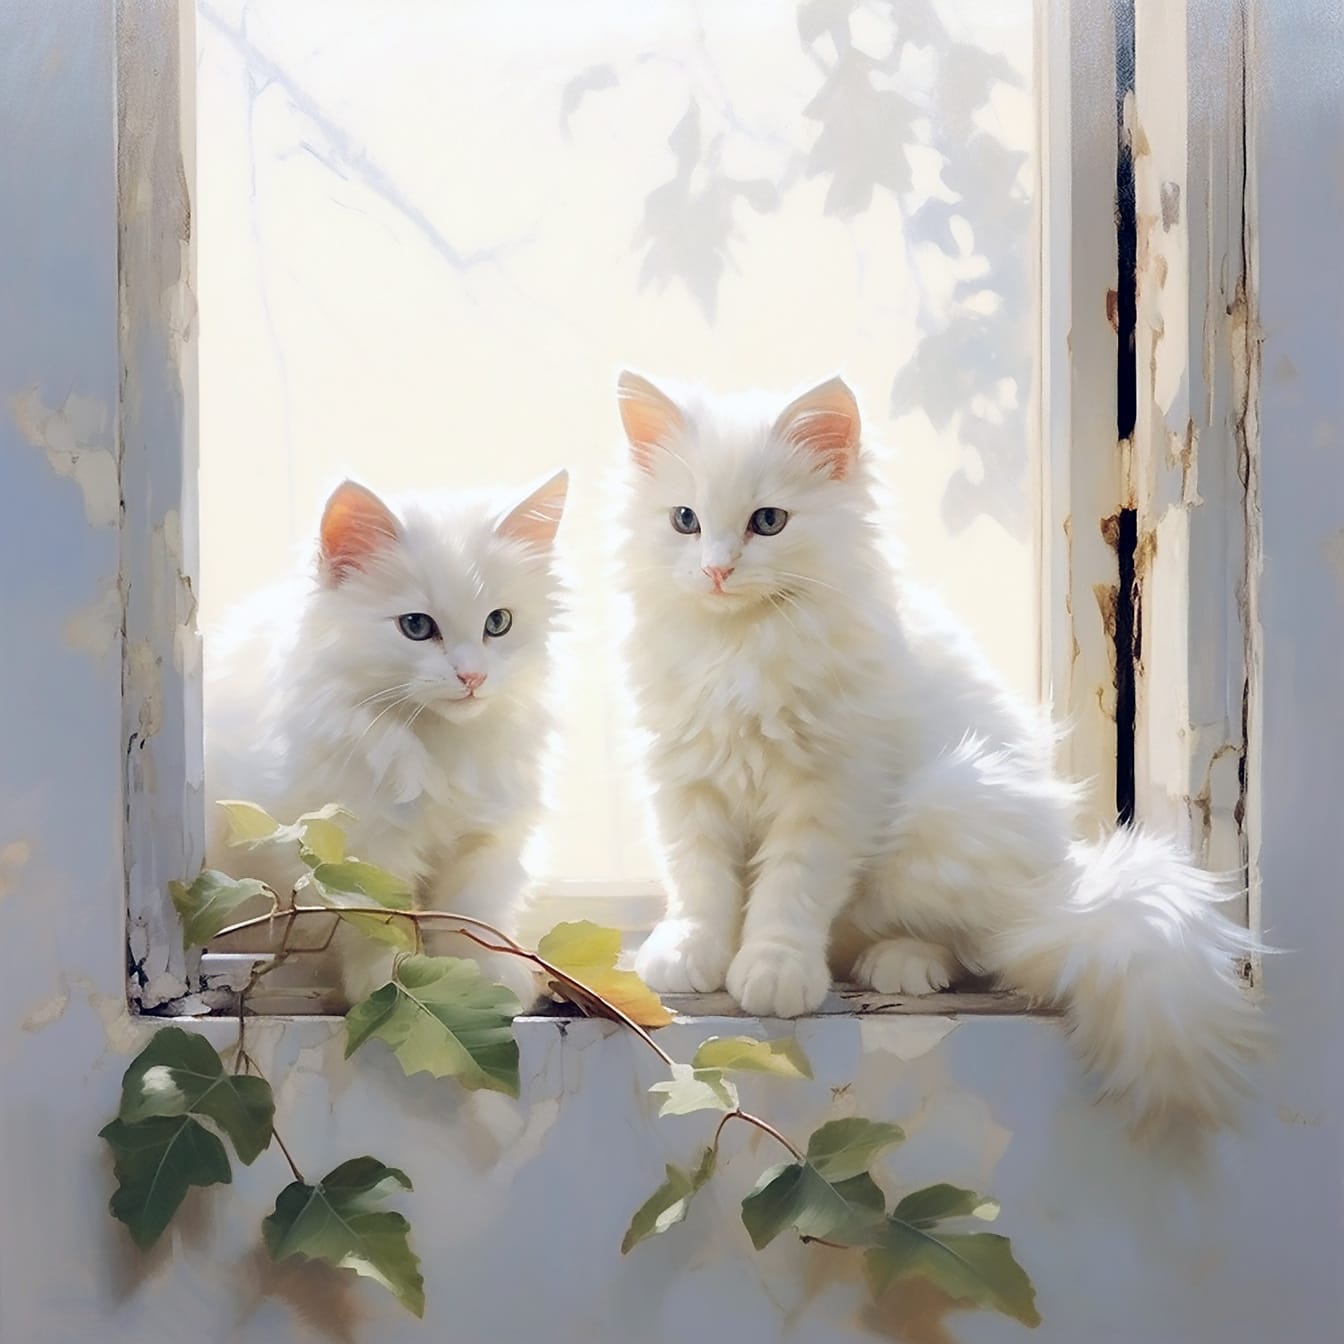 Jolis chatons angora blancs assis sur l’illustration numérique de vieille fenêtre